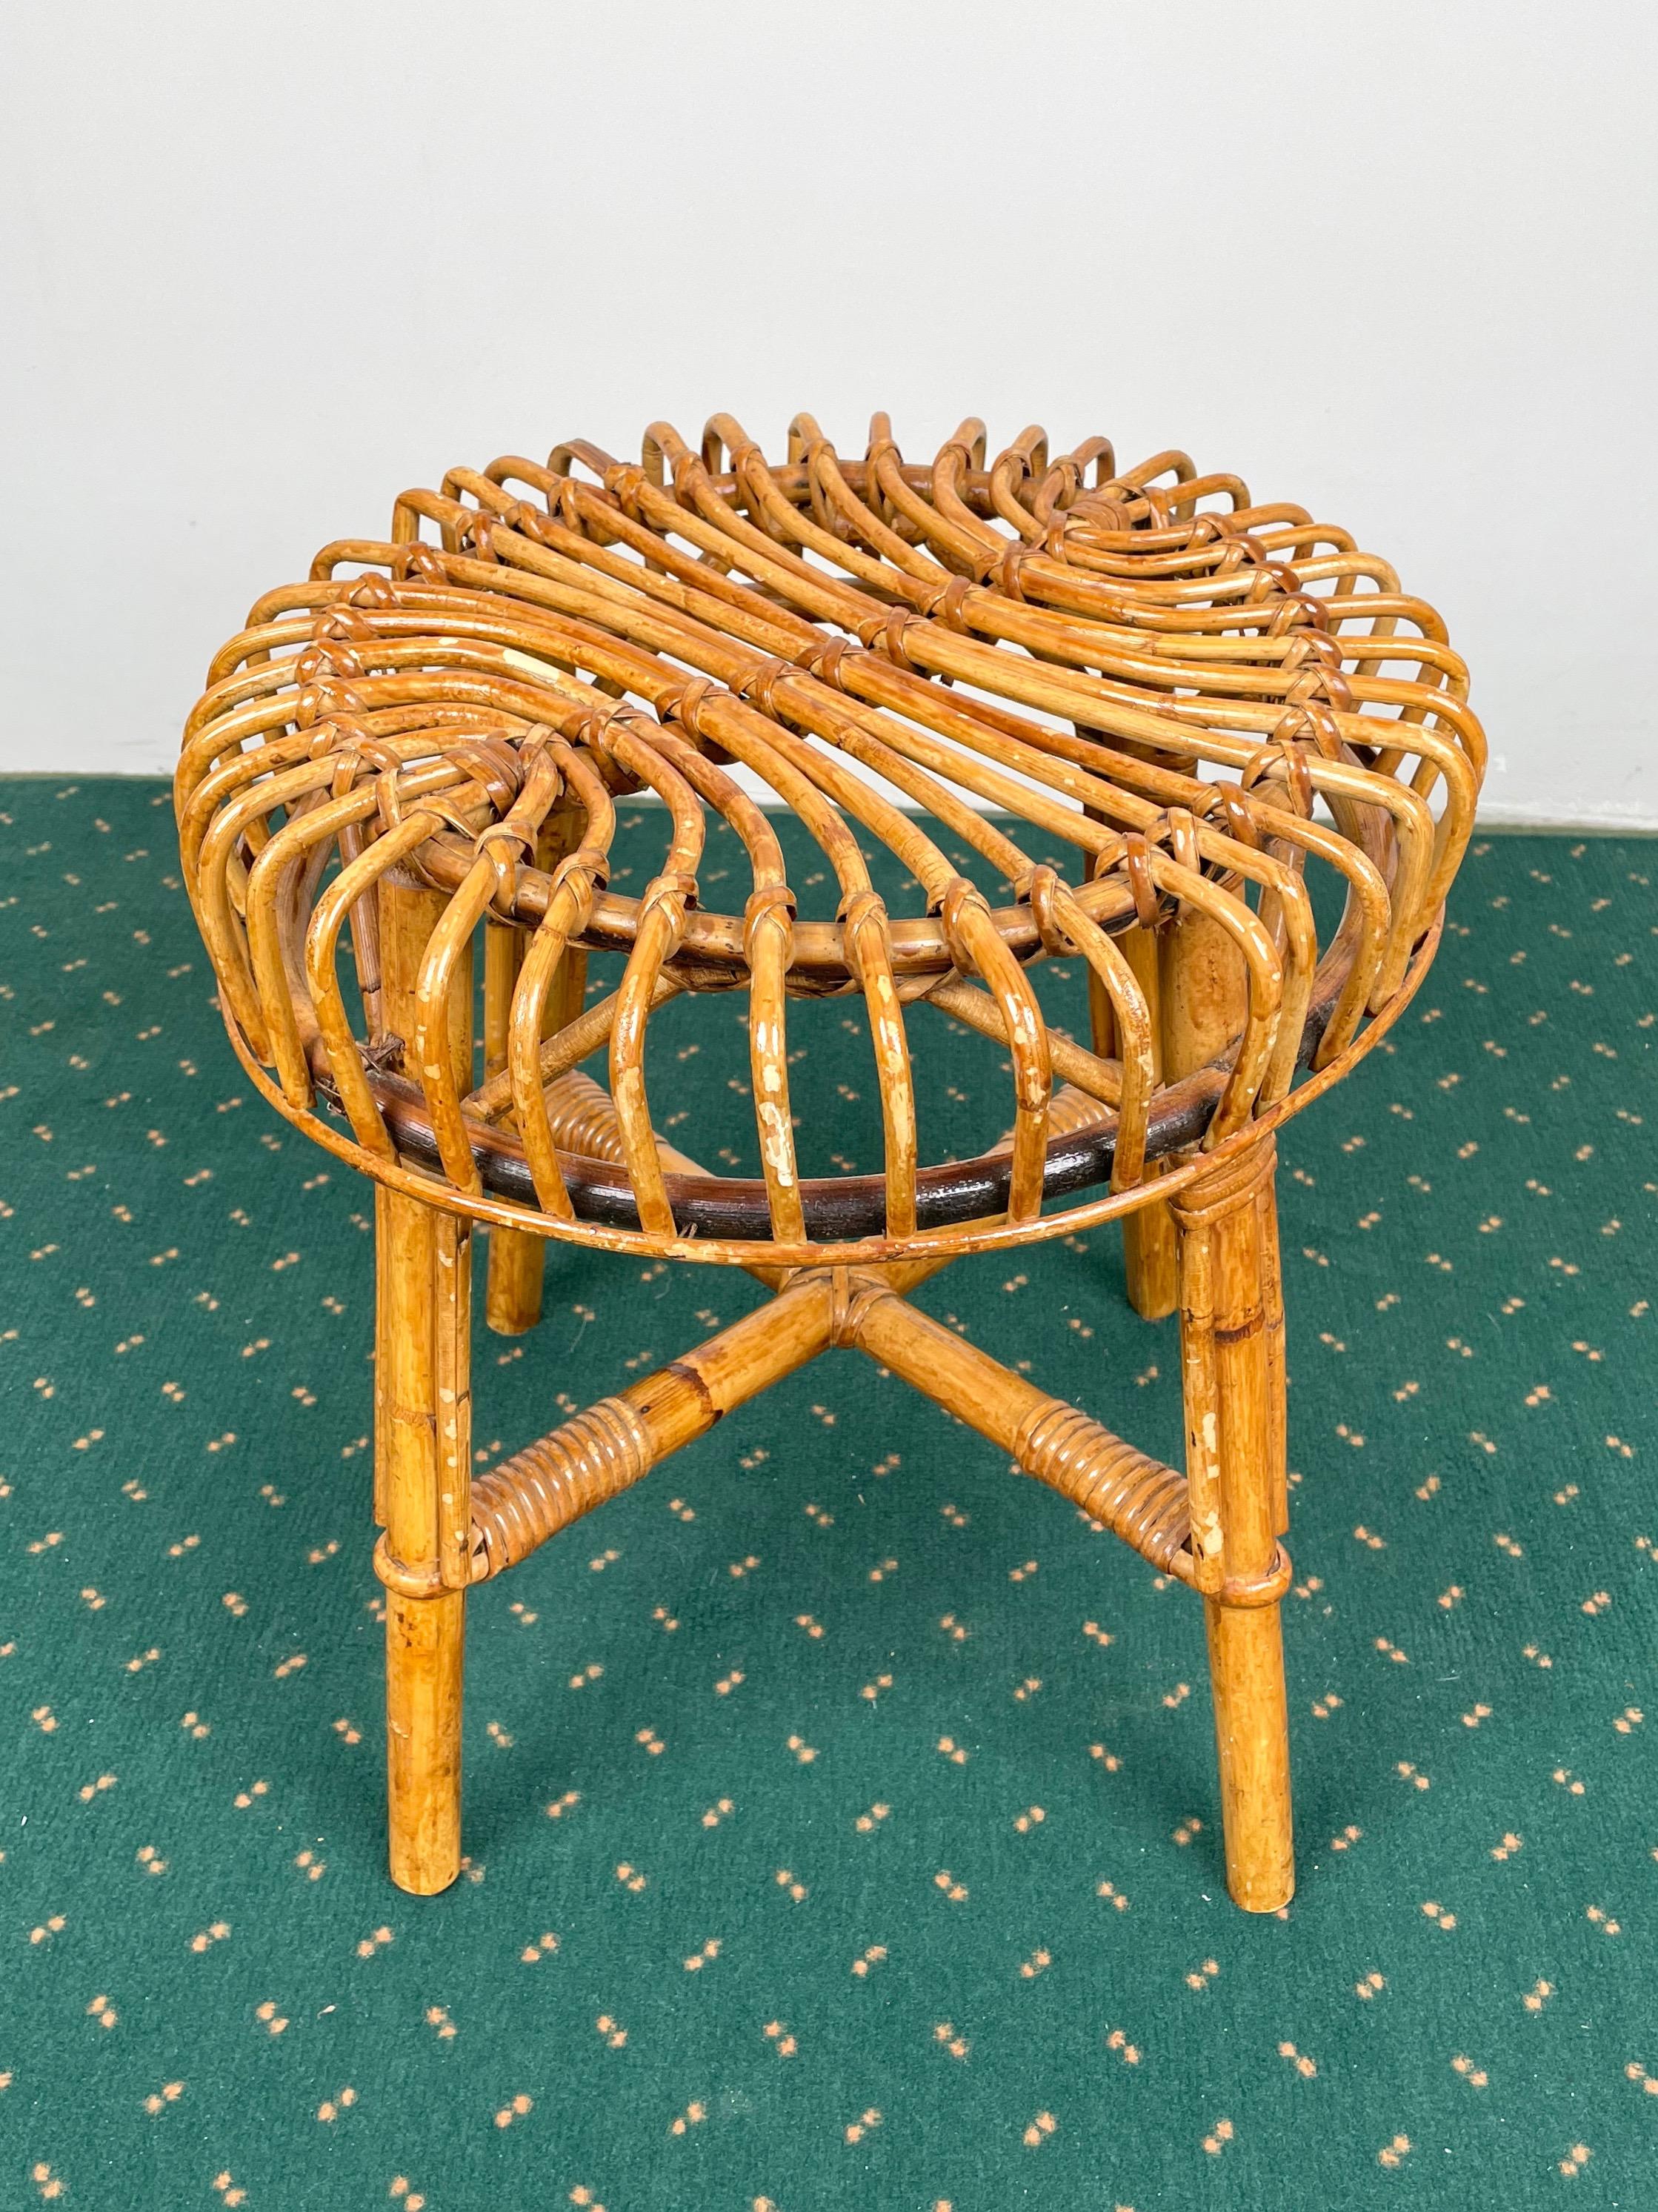 1960s Italian stool in bamboo and rattan.